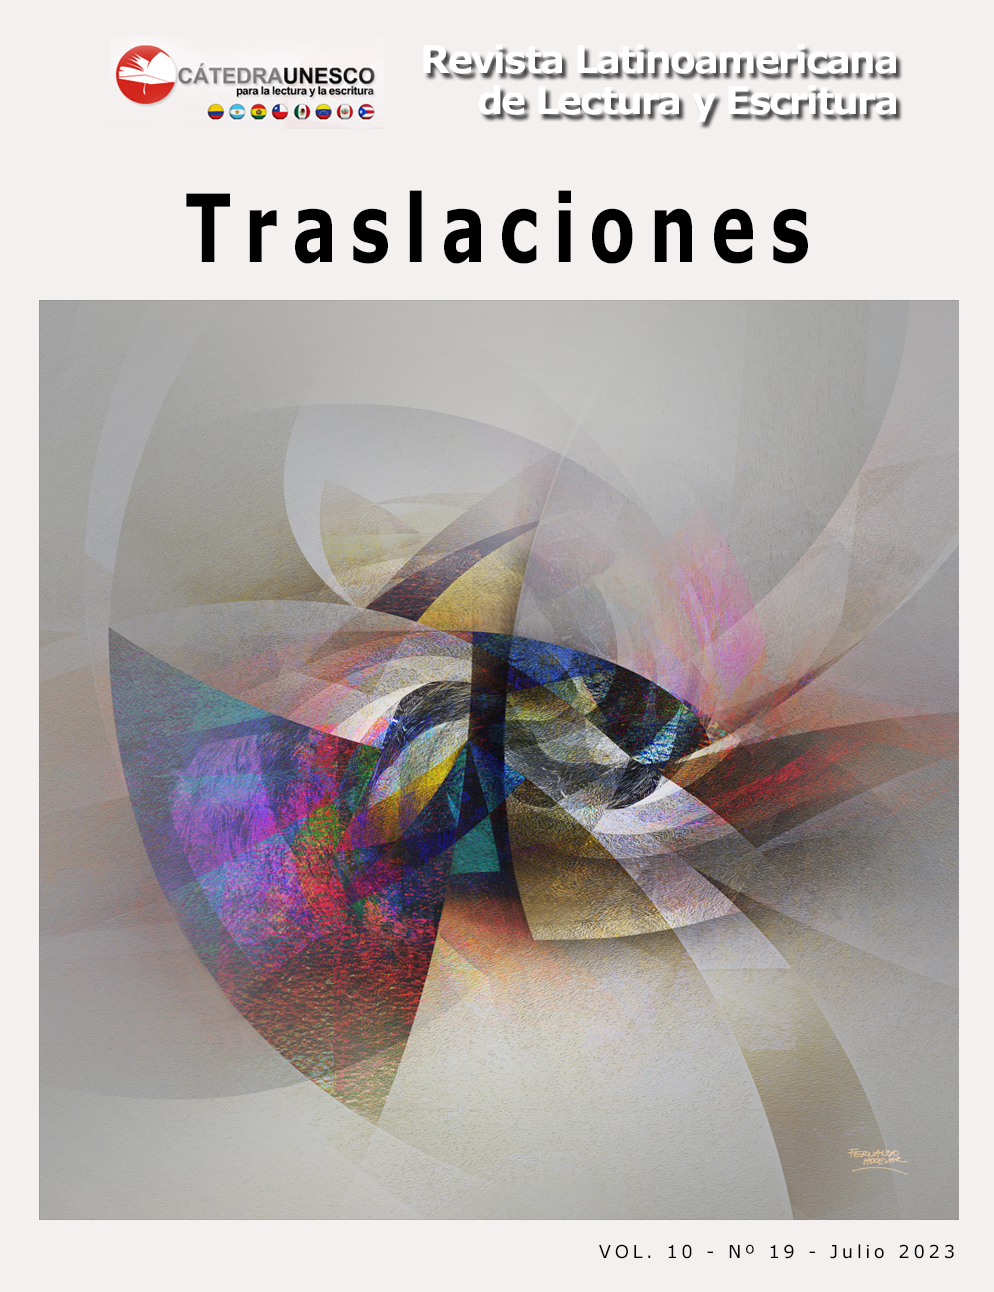 Traslaciones. Revista latinoamericana de Lectura y